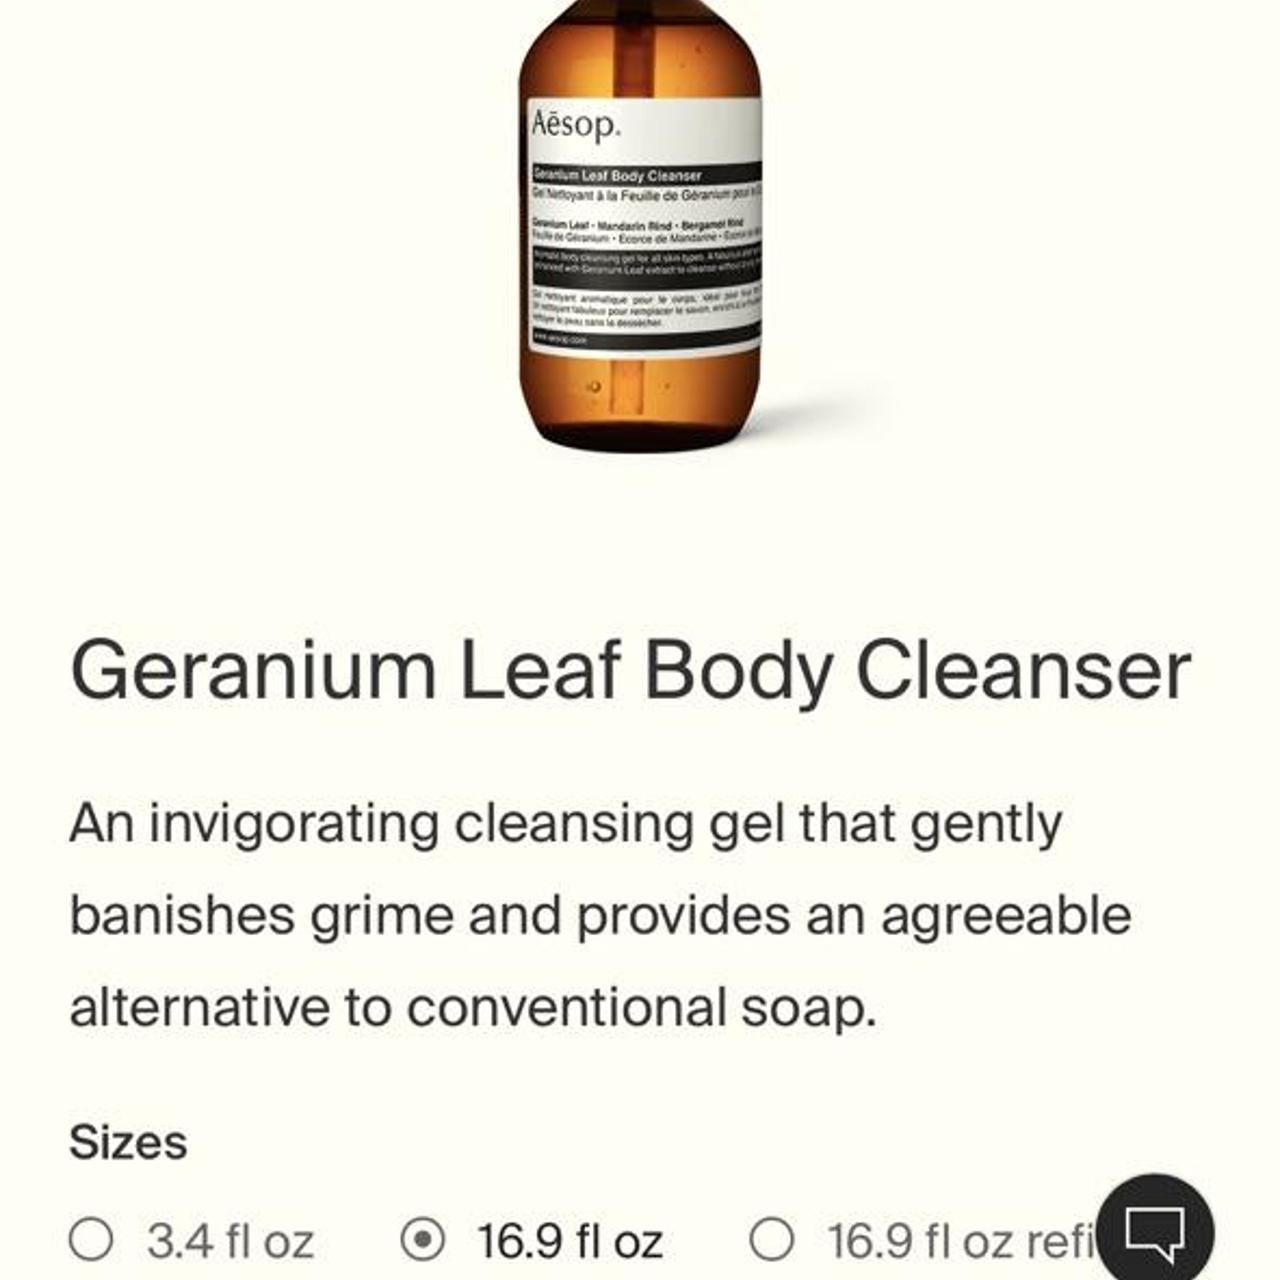 Product Image 1 - Aesop cleanser 

1 Geranium Leaf